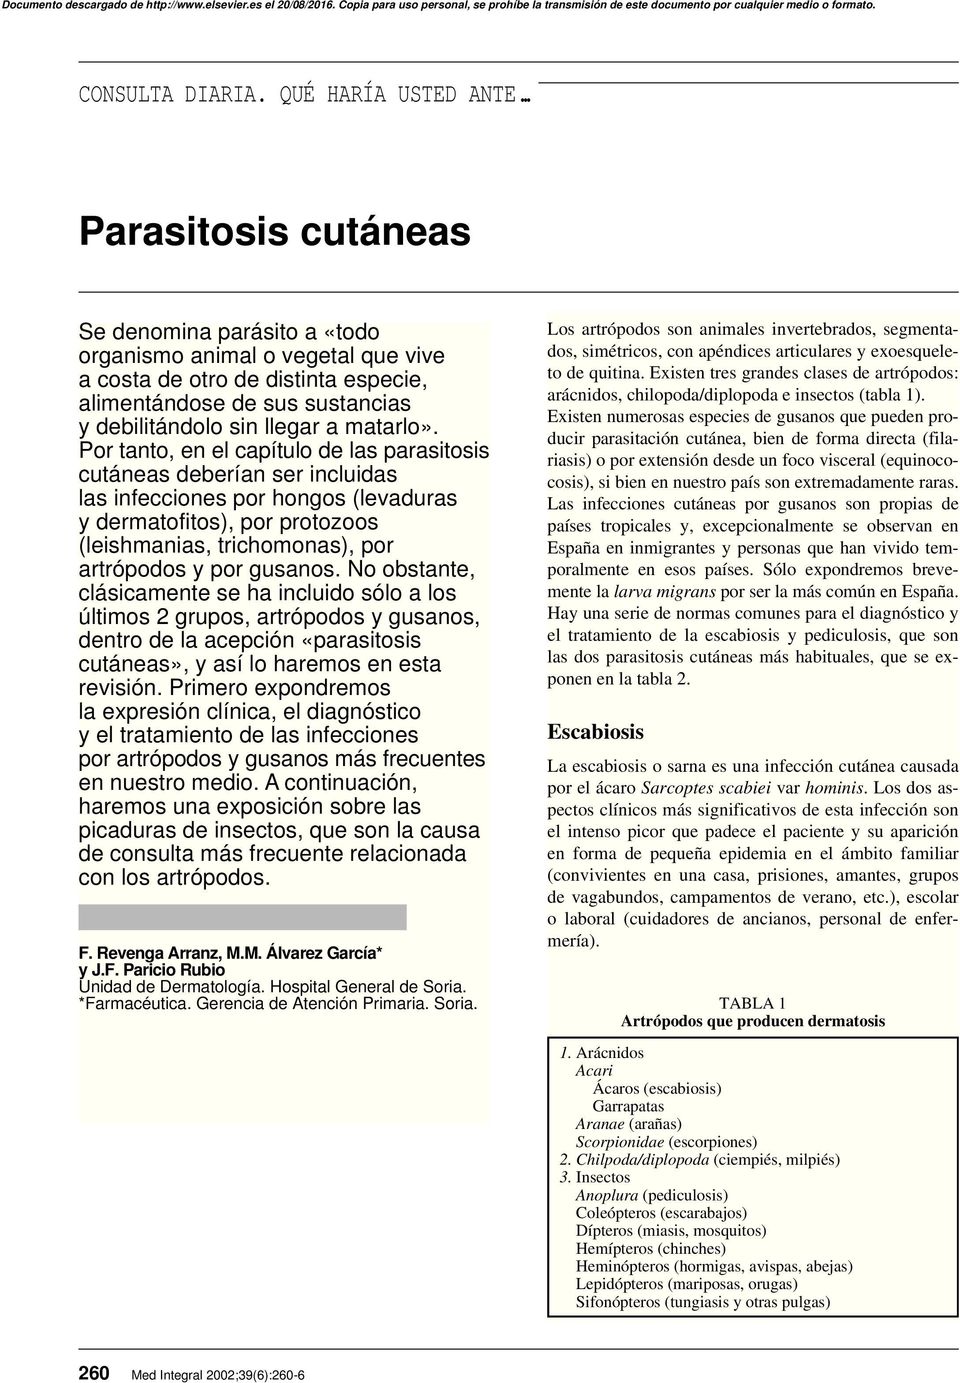 Por tanto, en el capítulo de las parasitosis cutáneas deberían ser incluidas las infecciones por hongos (levaduras y dermatofitos), por protozoos (leishmanias, trichomonas), por artrópodos y por